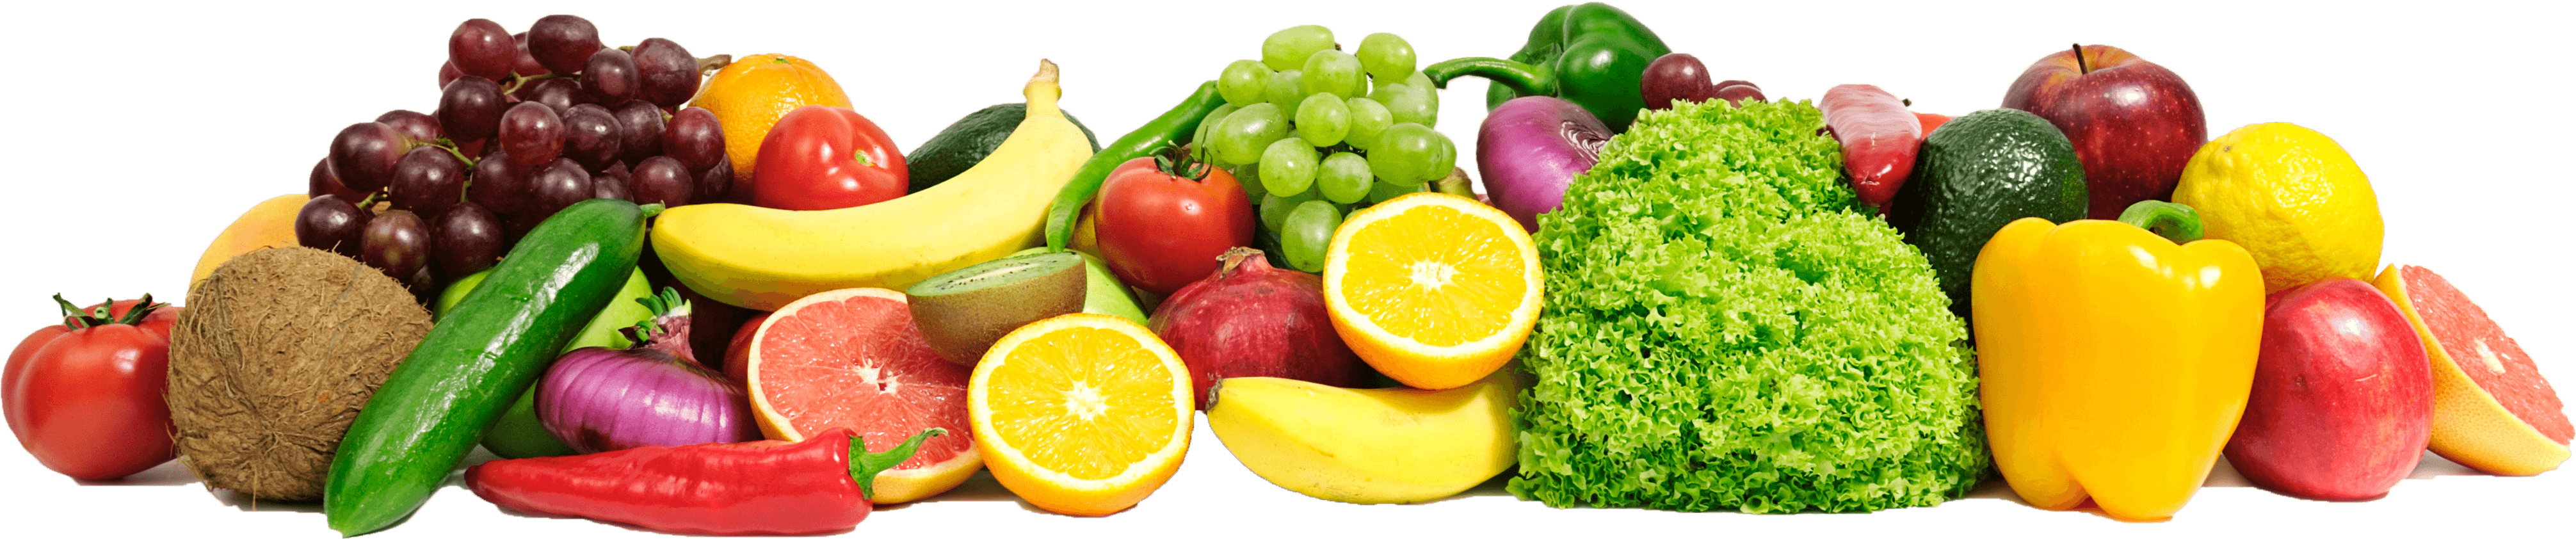 Frisches Früchte und Gemüse Transparenter Hintergrund